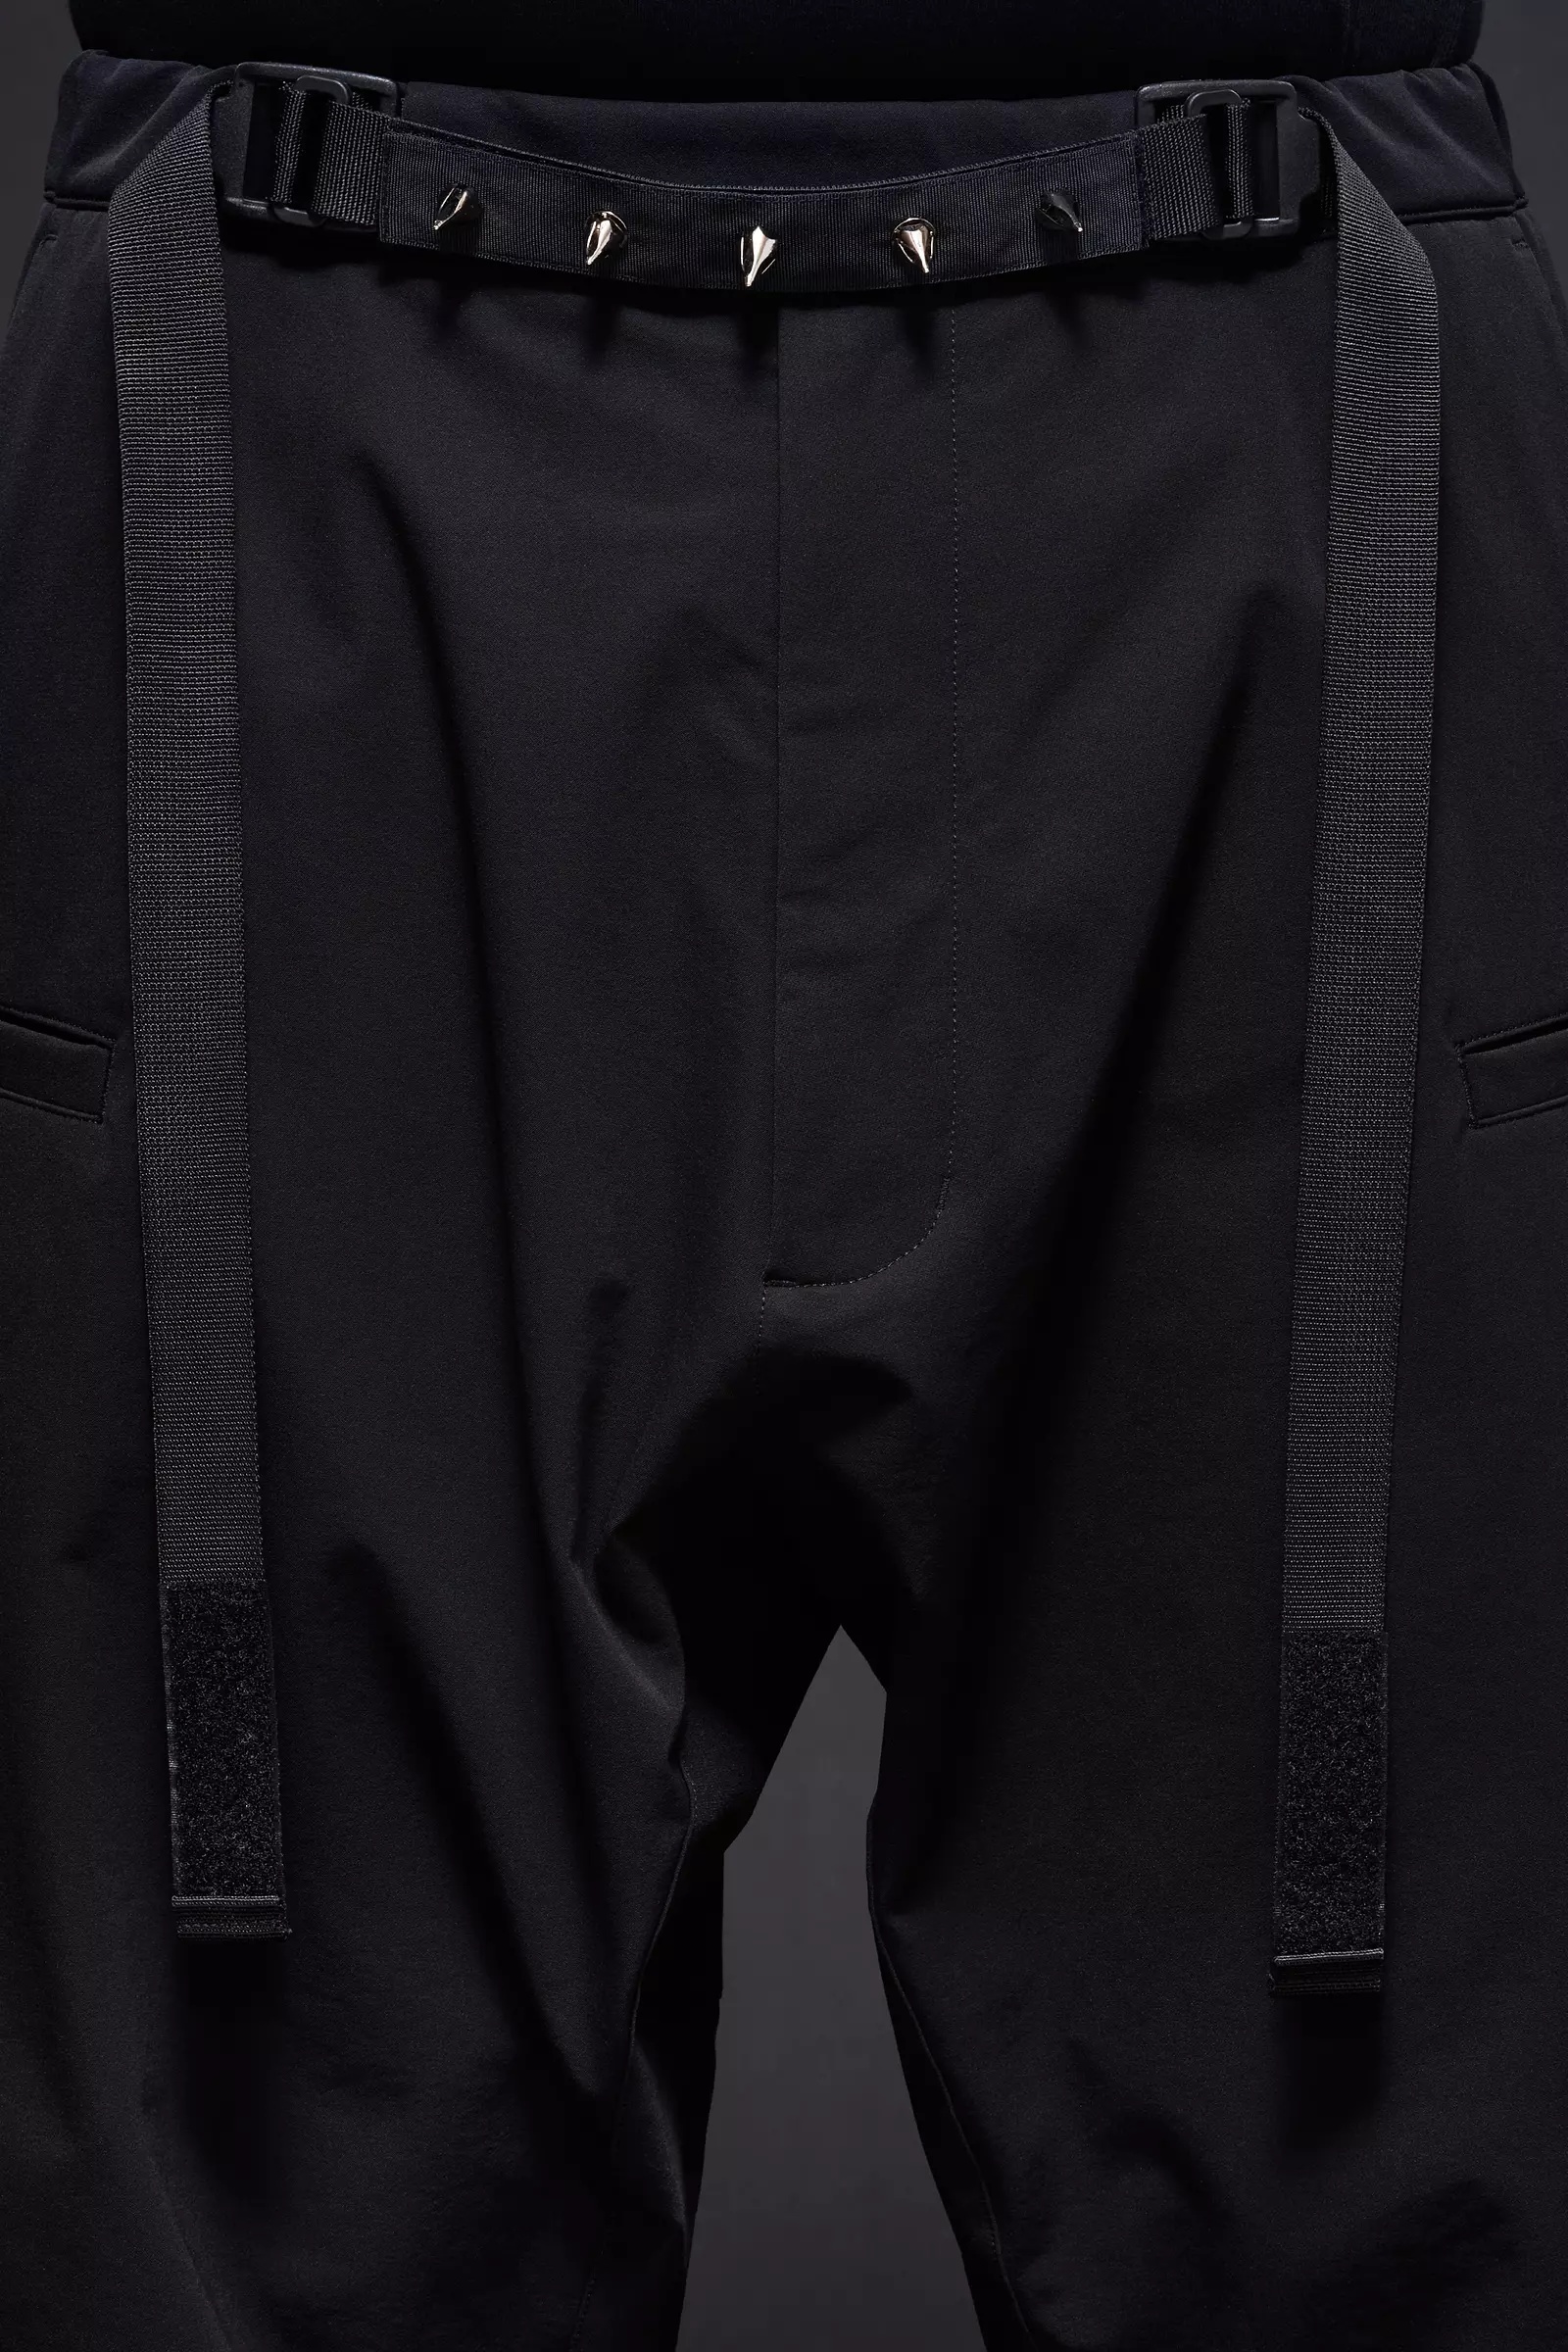 P17-DS schoeller® Dryskin™ Web Belt Trouser Black - 11